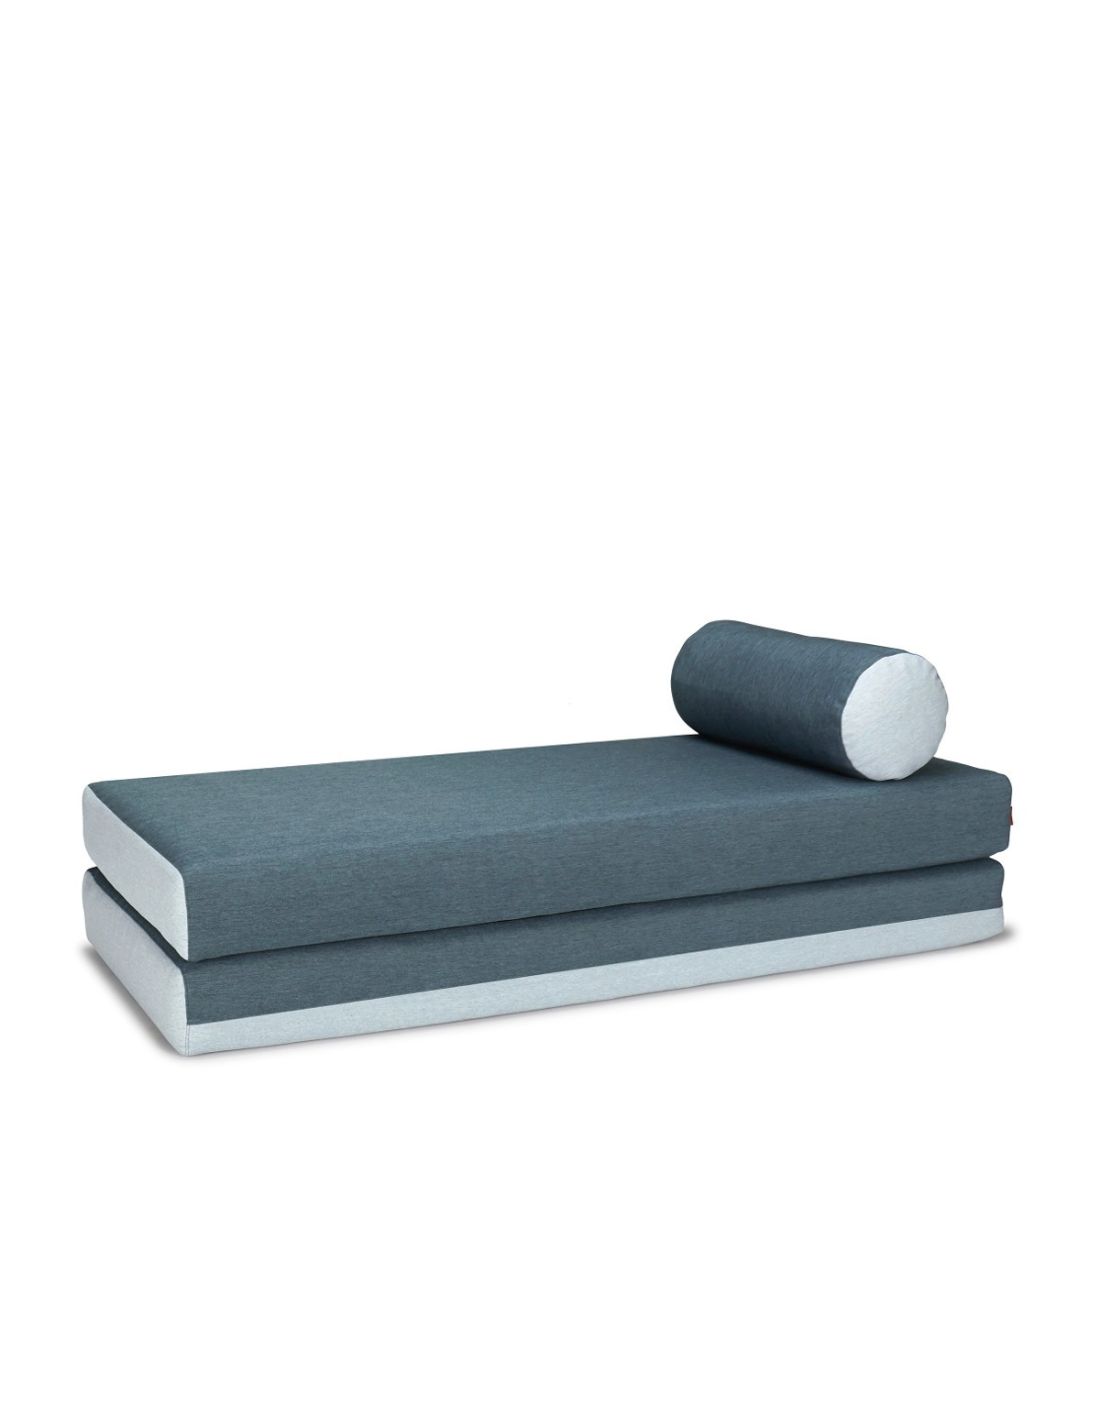 Divano letto dulox raddoppiabile design moderno per cameretta for Divano letto design